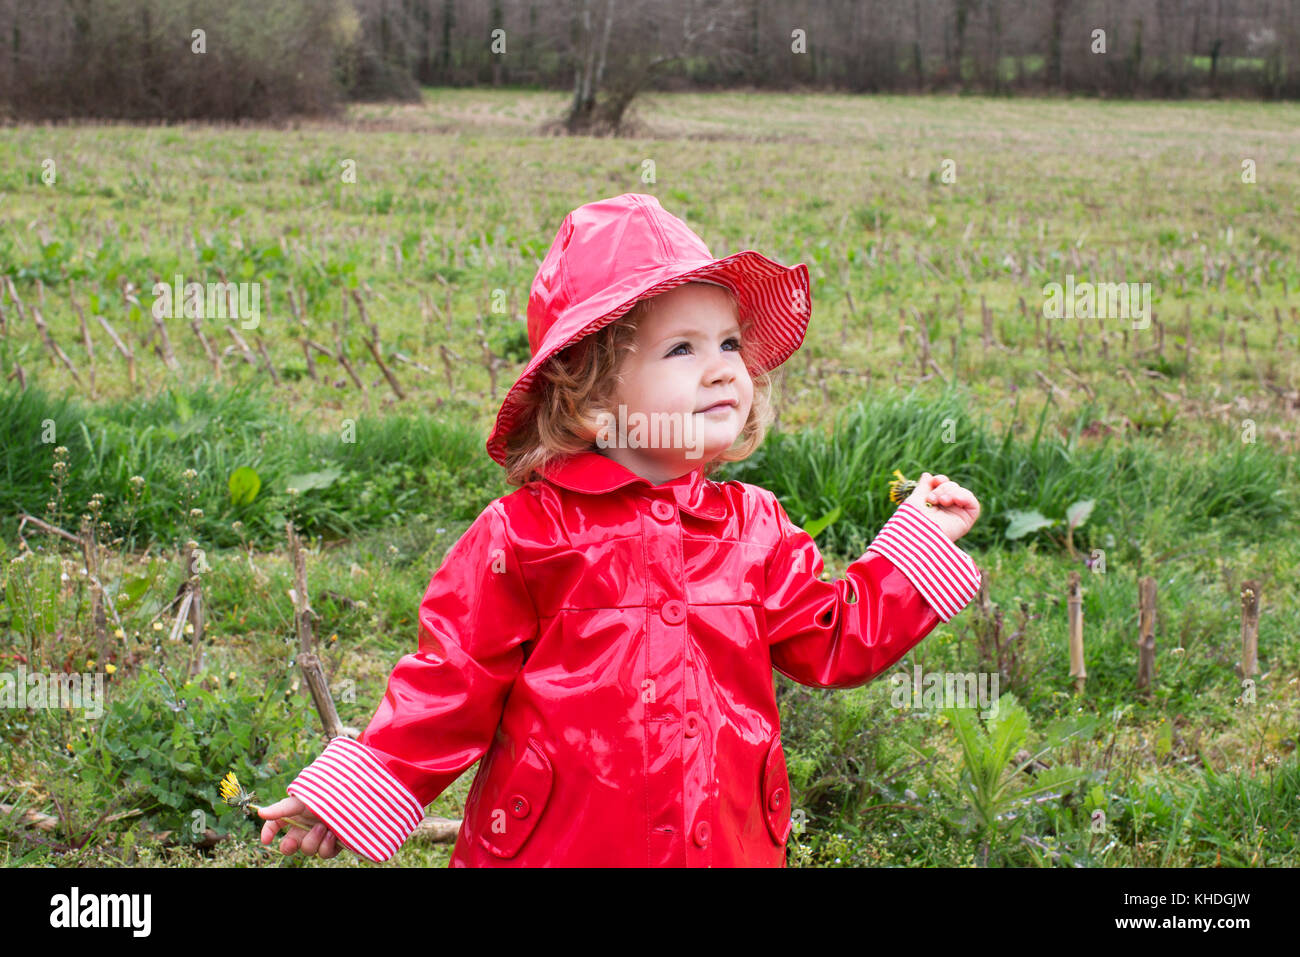 Little girl wearing rain gear playing in field Stock Photo